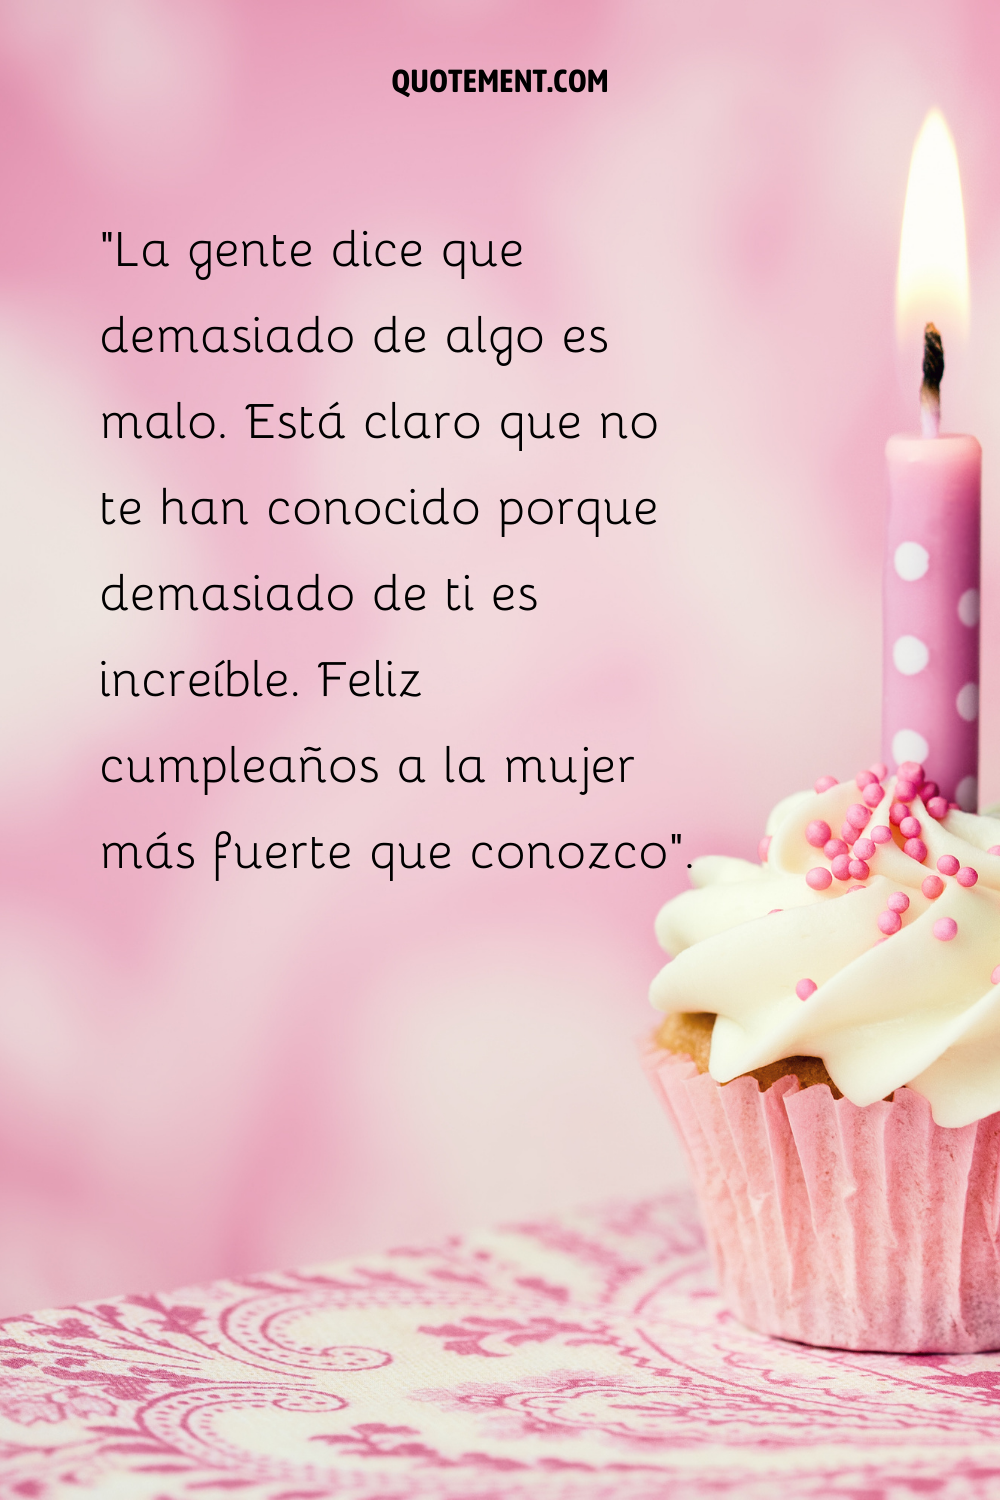 Una sola vela encendida sobre un cupcake rosa con glaseado blanco y virutas rosas